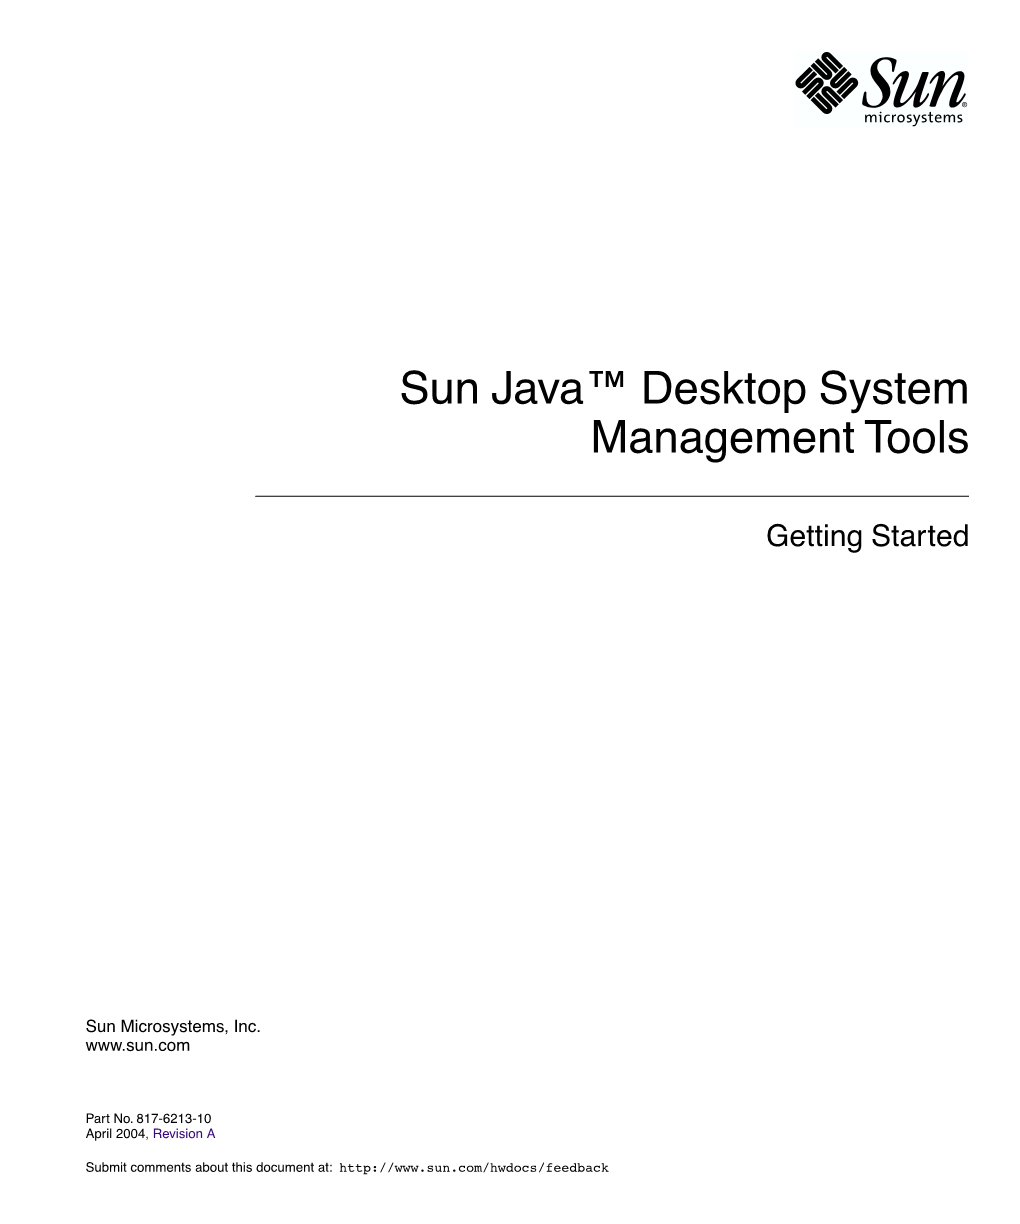 Sun Java Desktop System Management Tools—Getting Started • April 2004